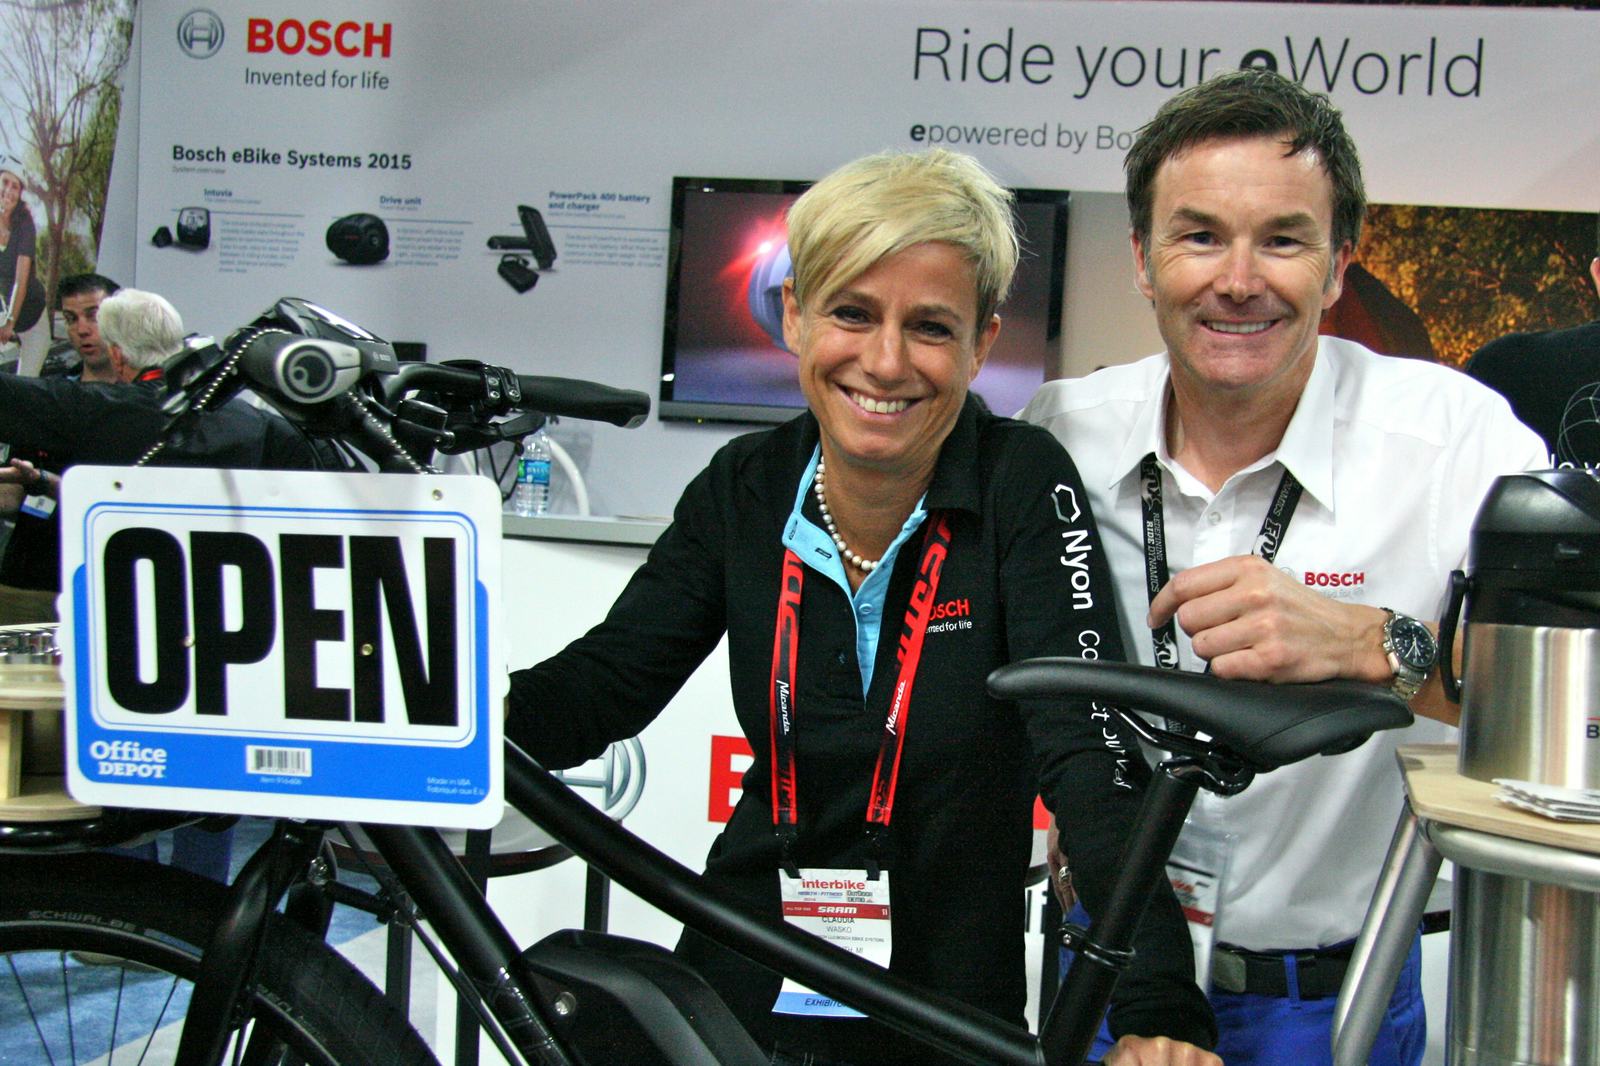 Claudia Wasko, manager Bosch eBike Systems North America (l.) with Bosch GM Claus Fleischer. – Photo Jo Beckendorff

